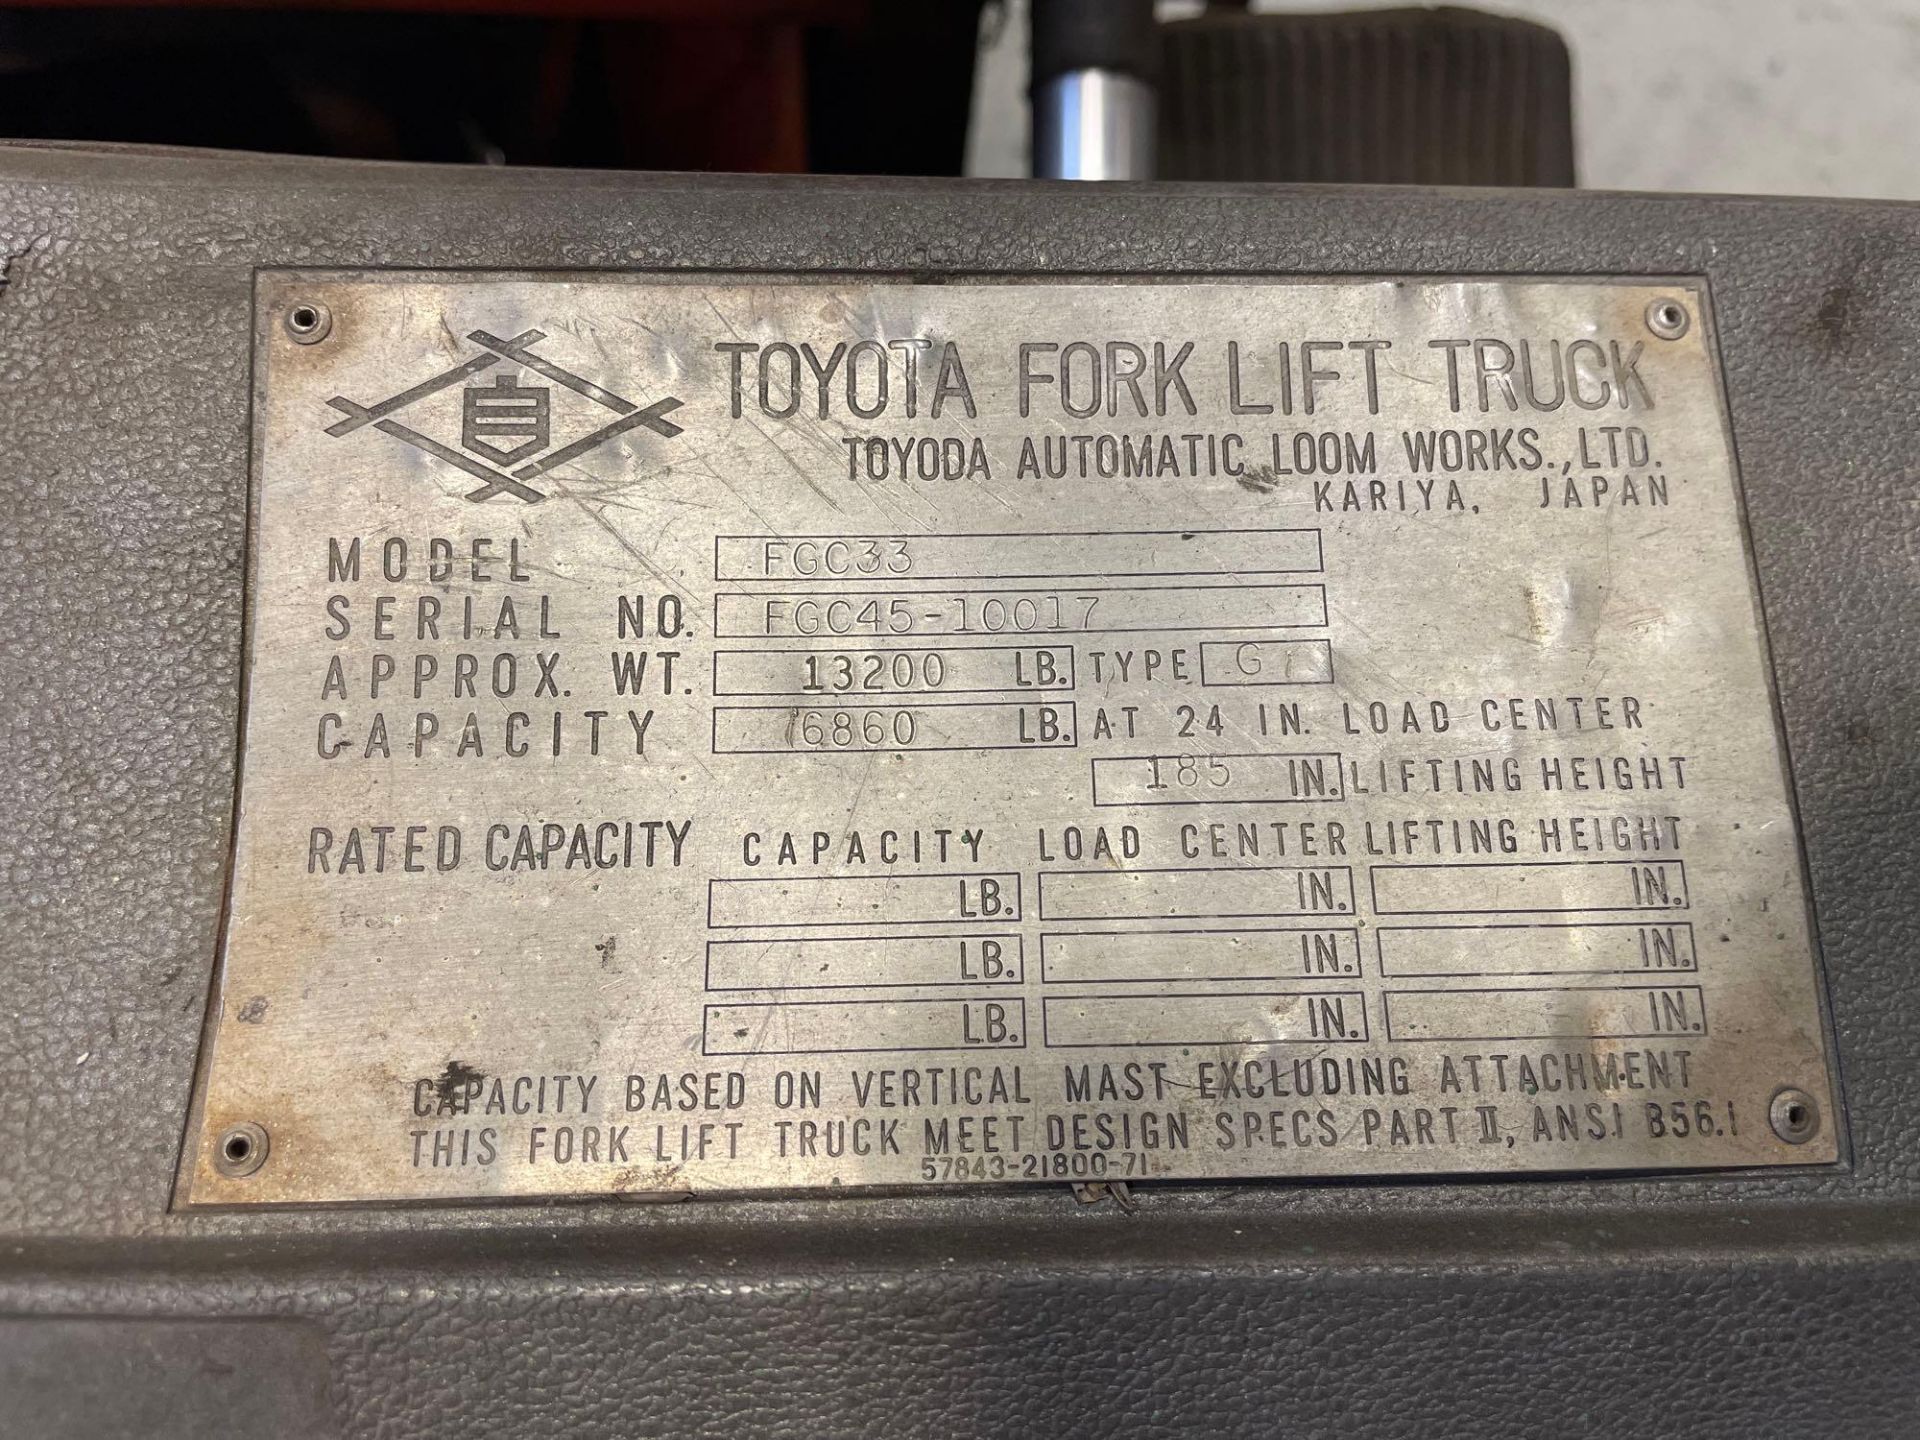 7000 Lb. Toyota Forklift - Image 5 of 9